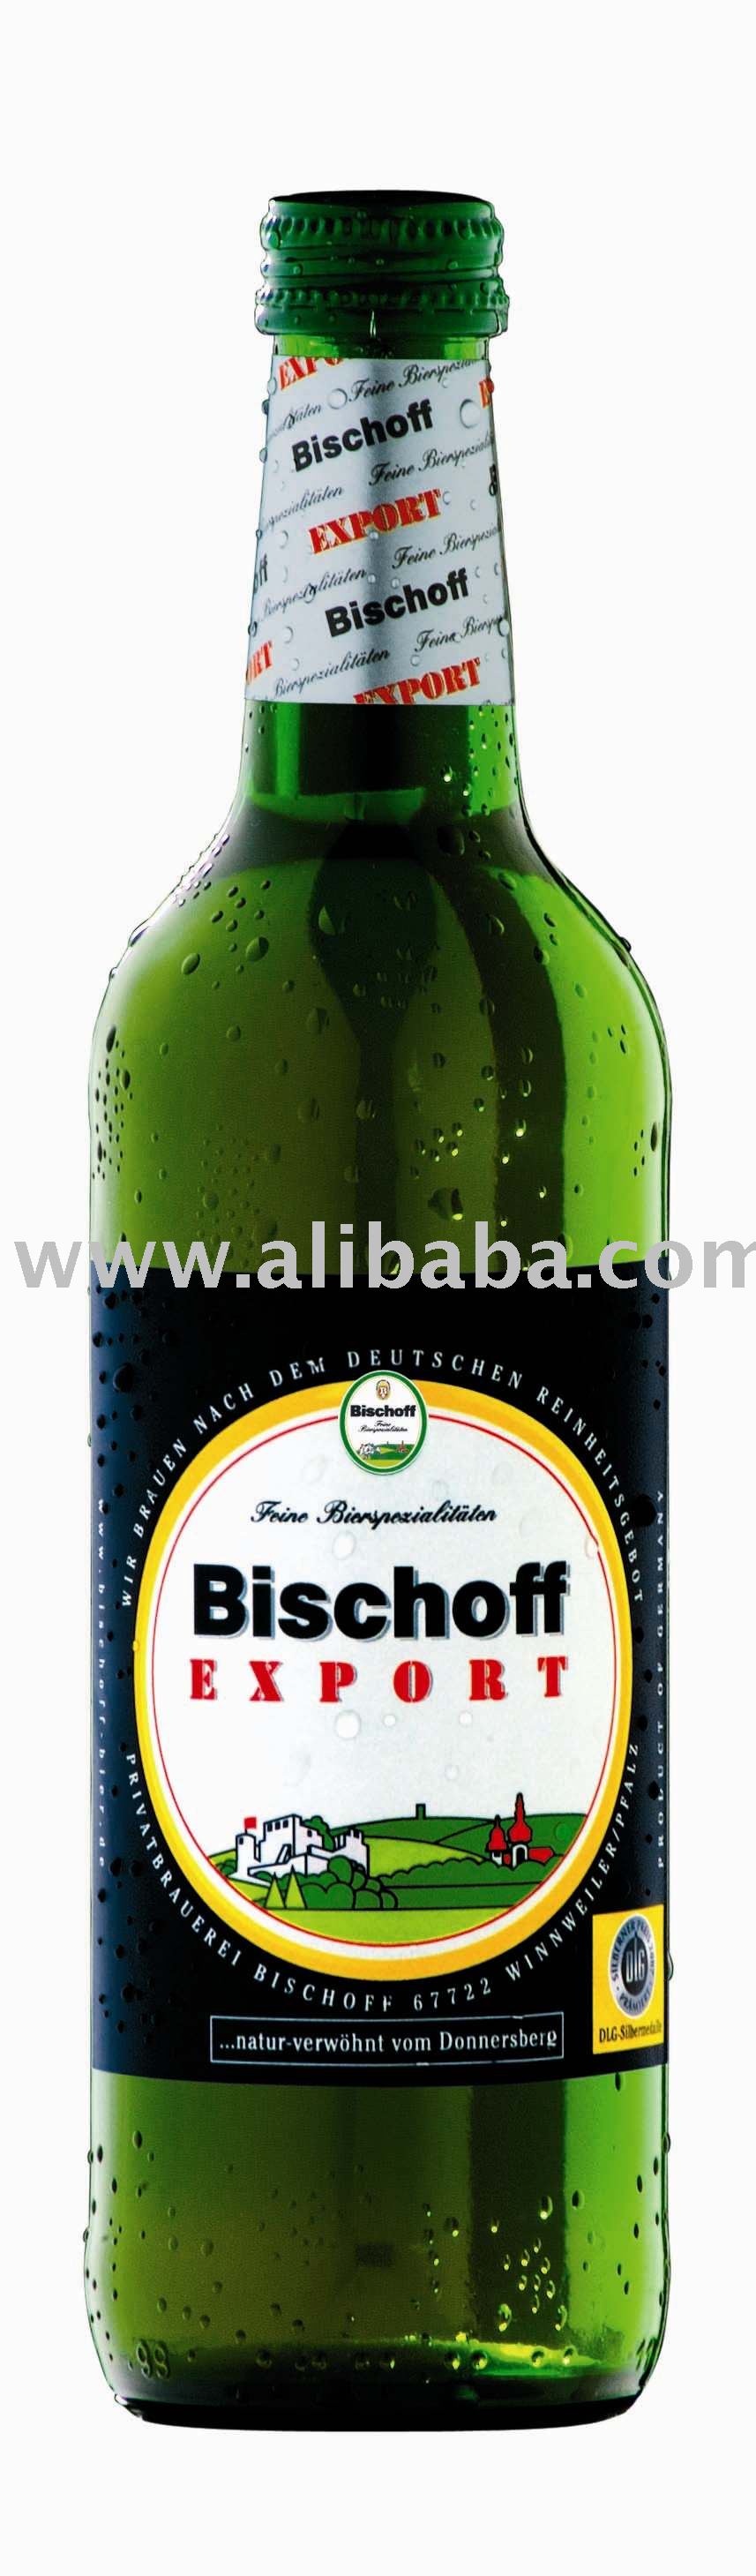 Bischoff Export Beer